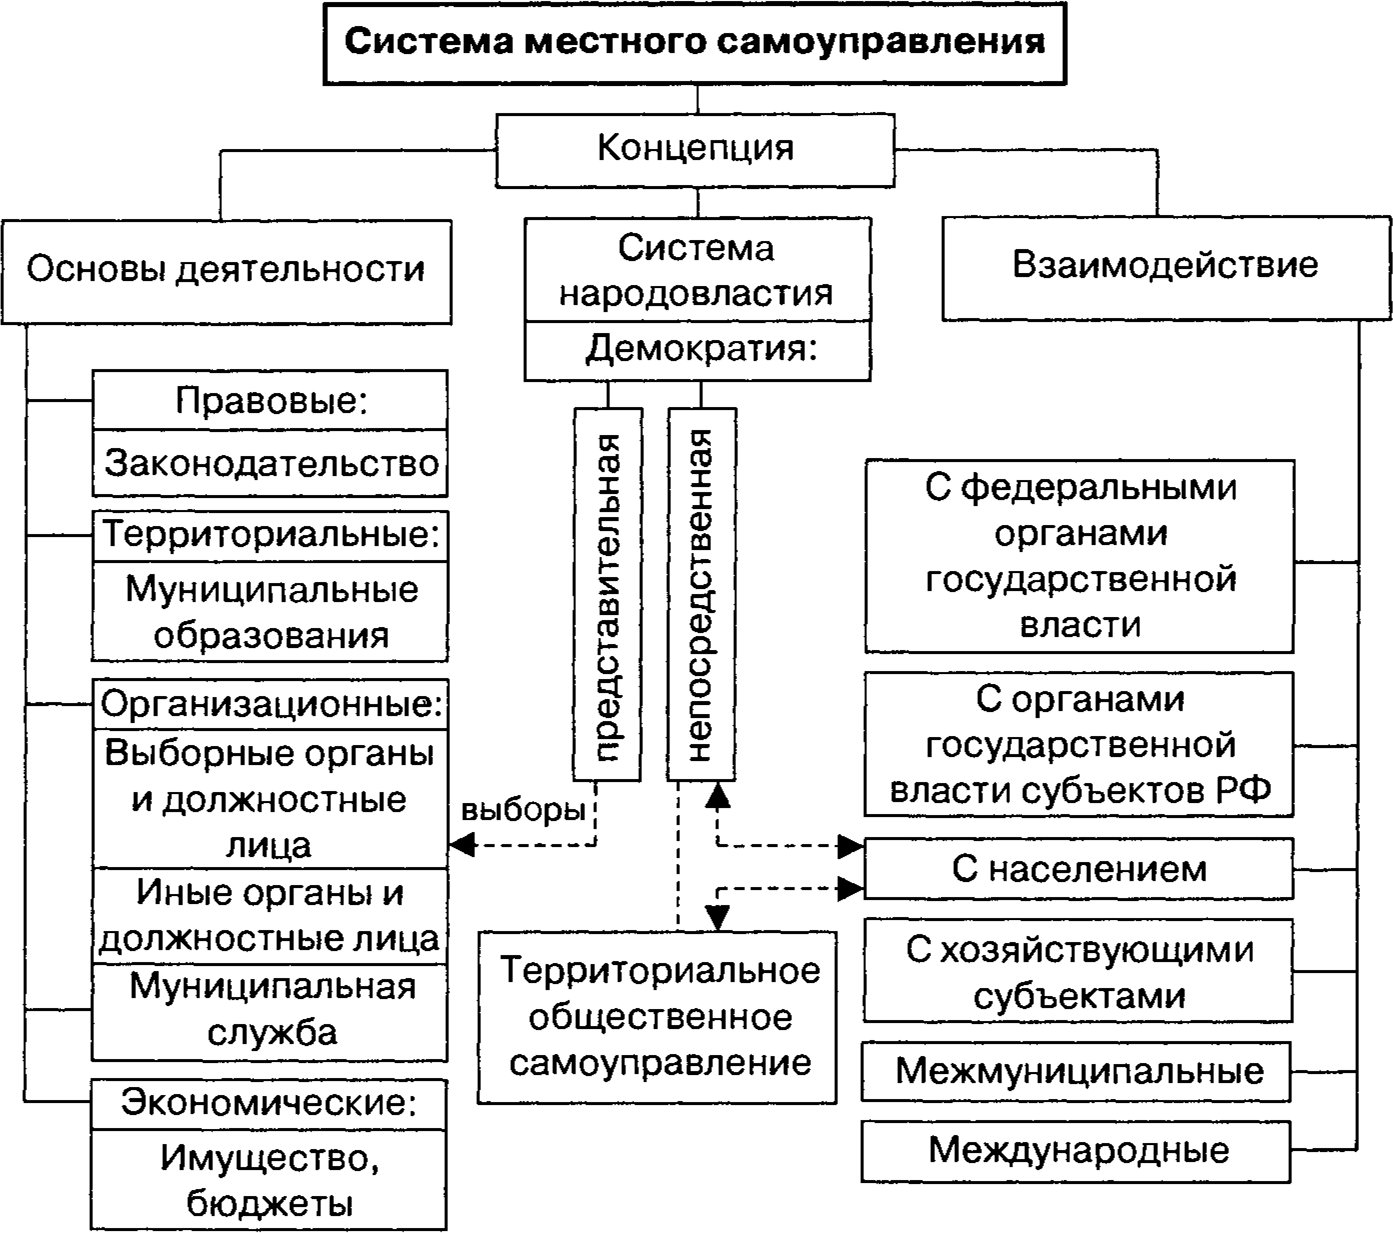 Структура системы местного самоуправления в России